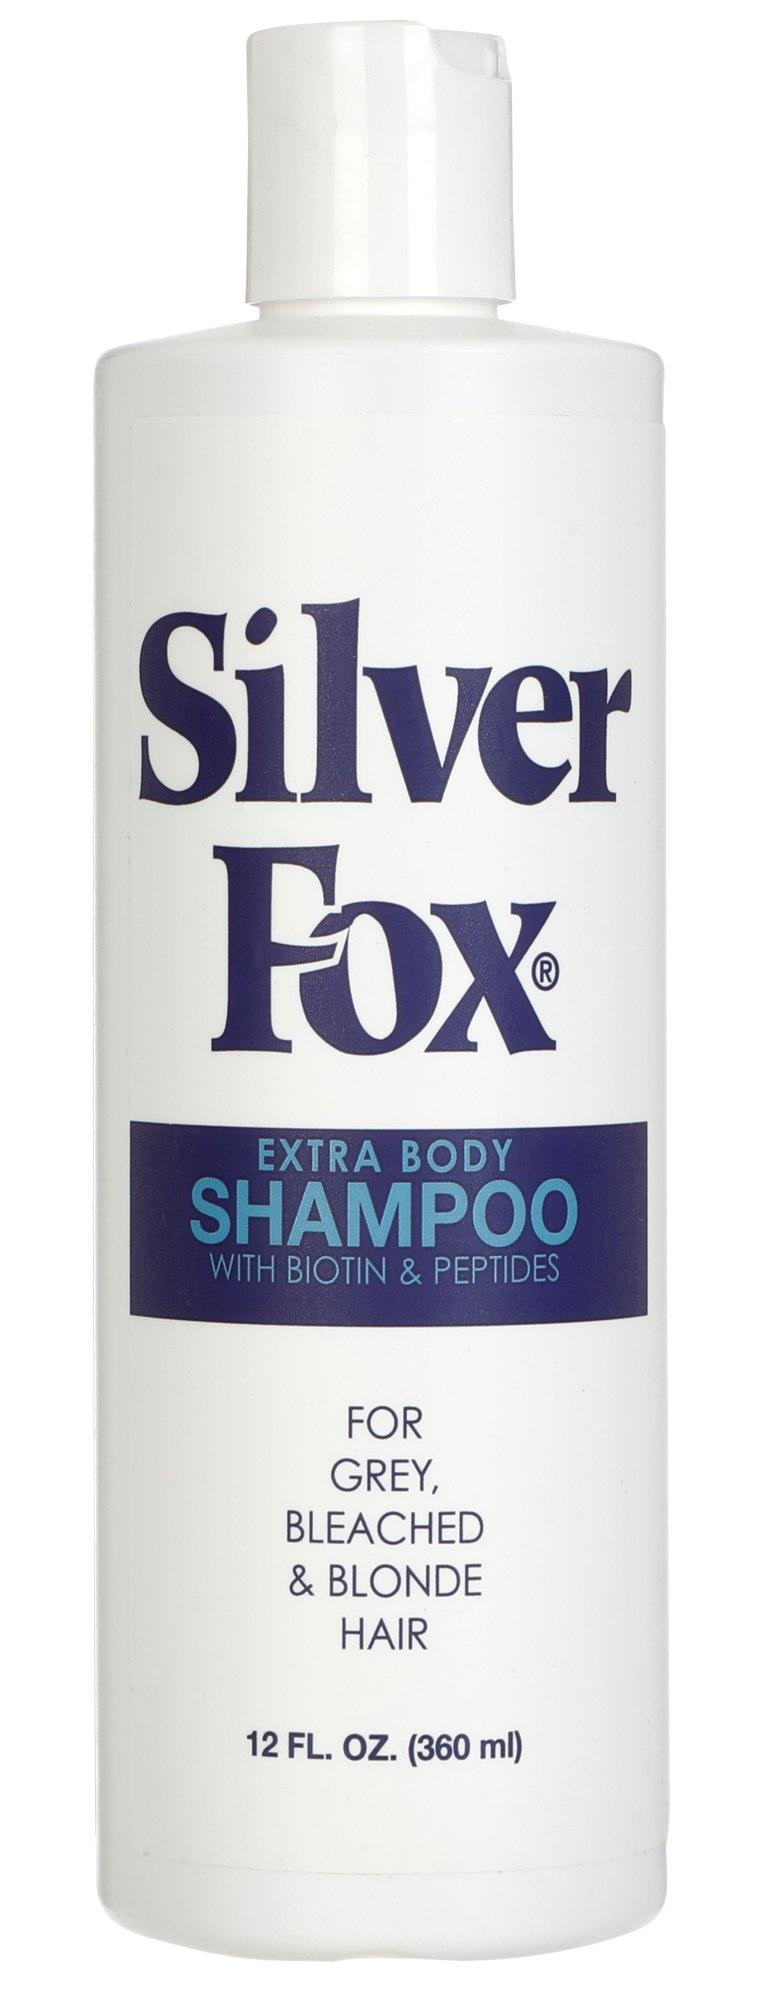 Extra Body Shampoo